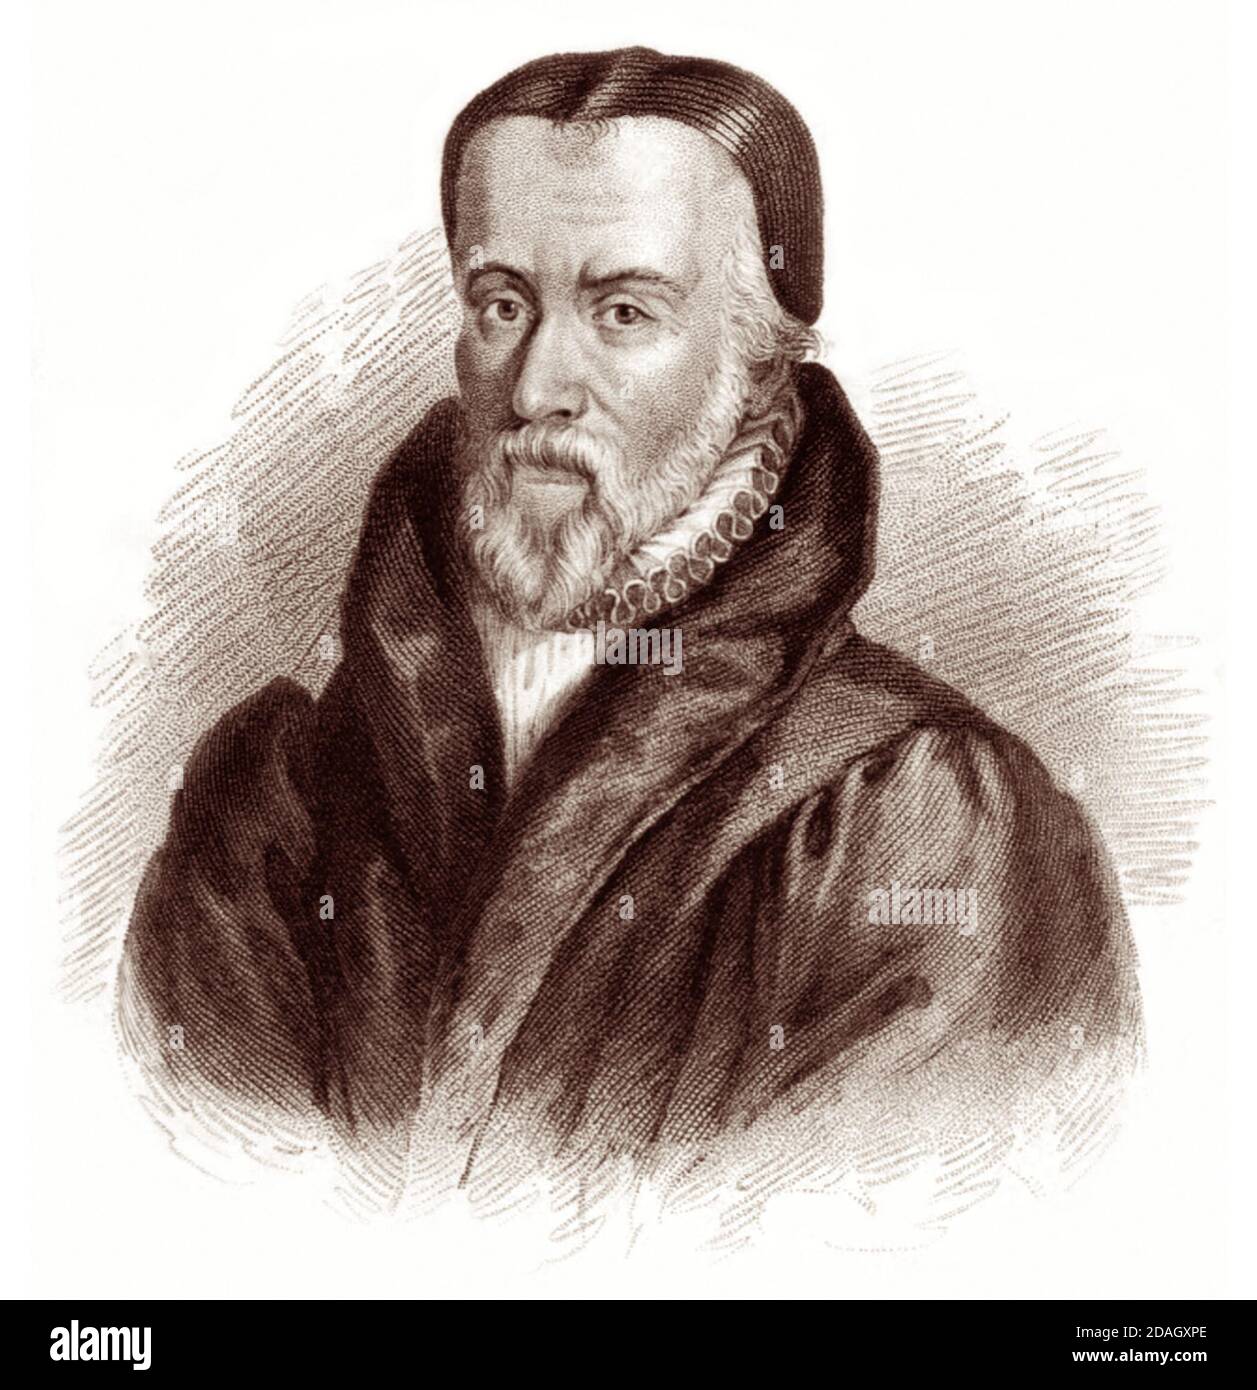 William Tyndale (1494 - 1536) fue un erudito inglés y destacada figura de la Reforma Protestante que, desafiando a la Iglesia Católica y el gobierno inglés, tradujo la Biblia al inglés, para lo cual fue estrangulado y quemado en la hoguera en 1536. Foto de stock